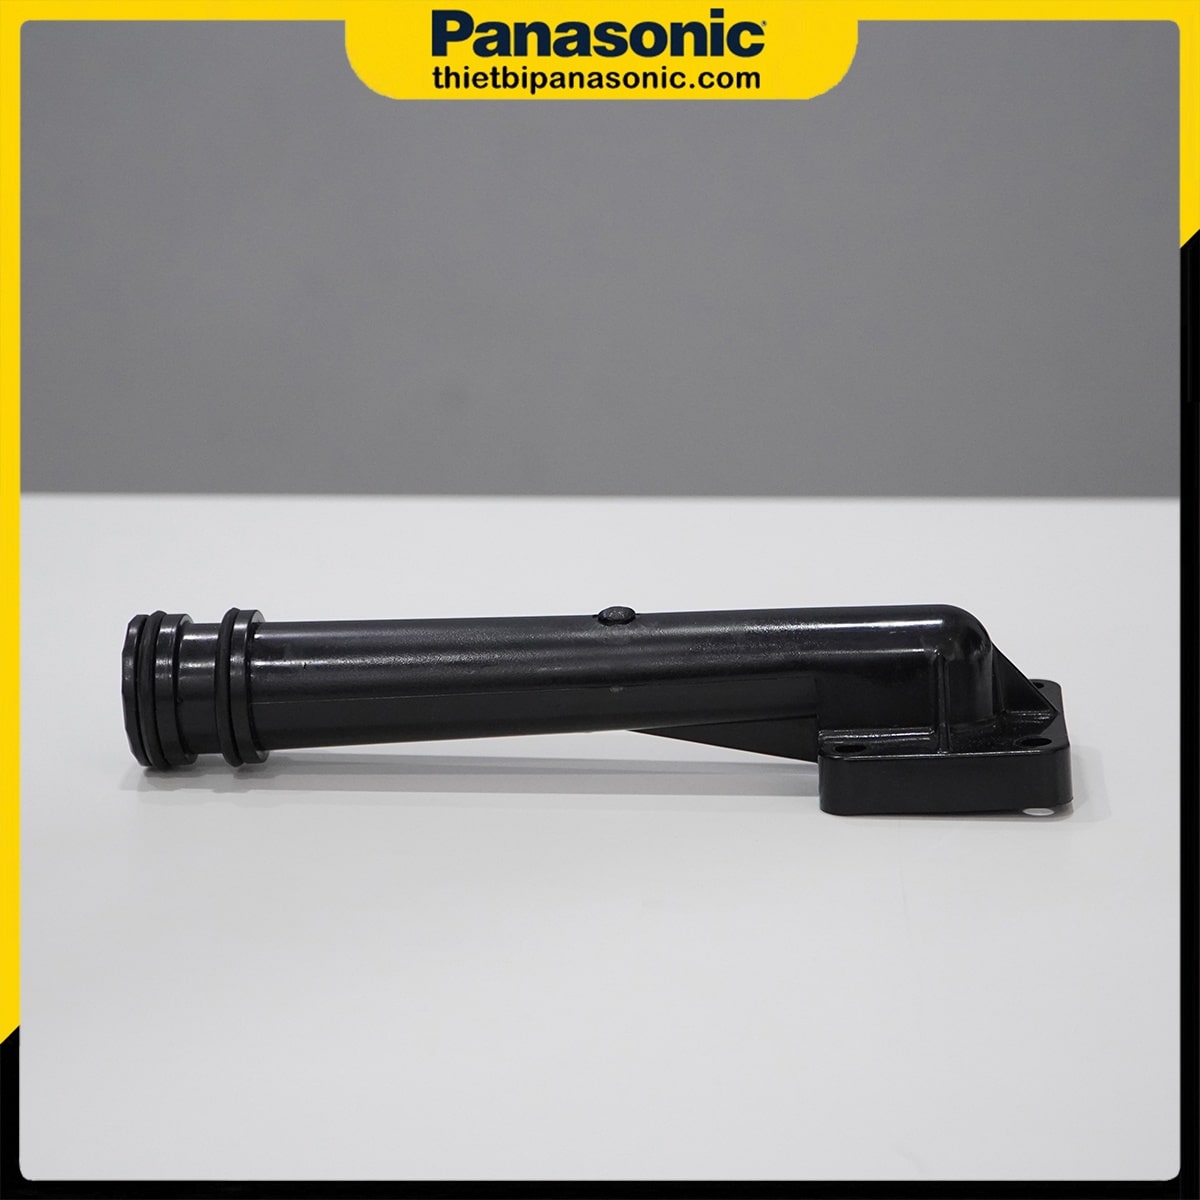 Co đứng bơm Panasonic được sản xuất tại Indonesia